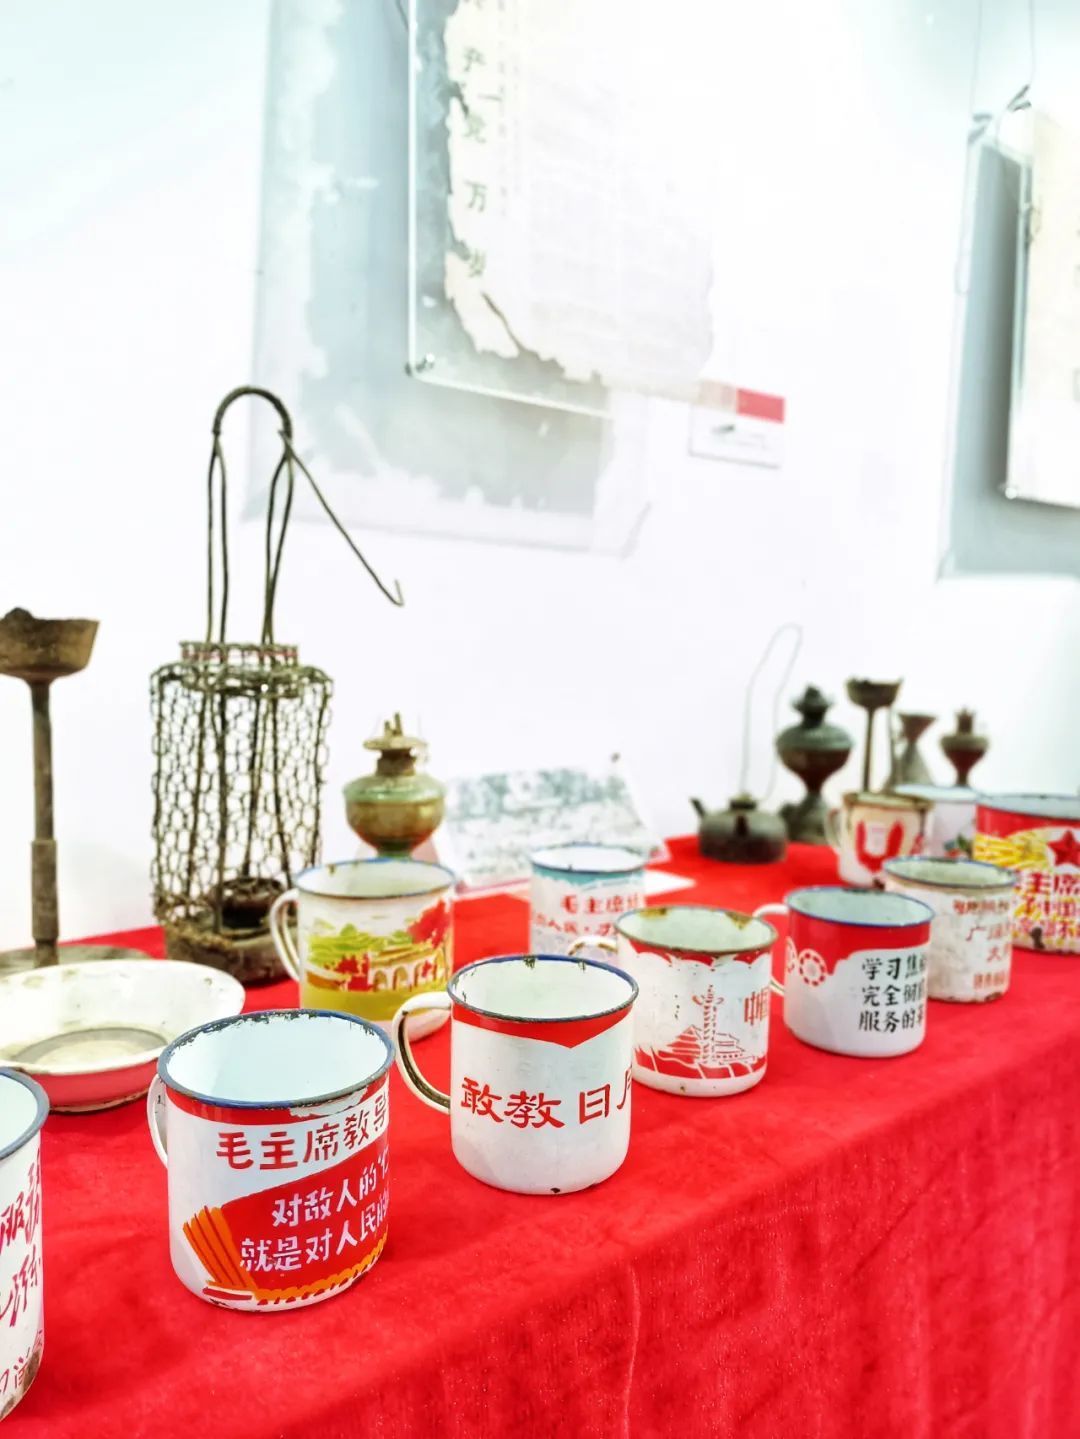 近期展览 | 庆祝建国72周年红色记忆收藏展于月湖群星展厅展出